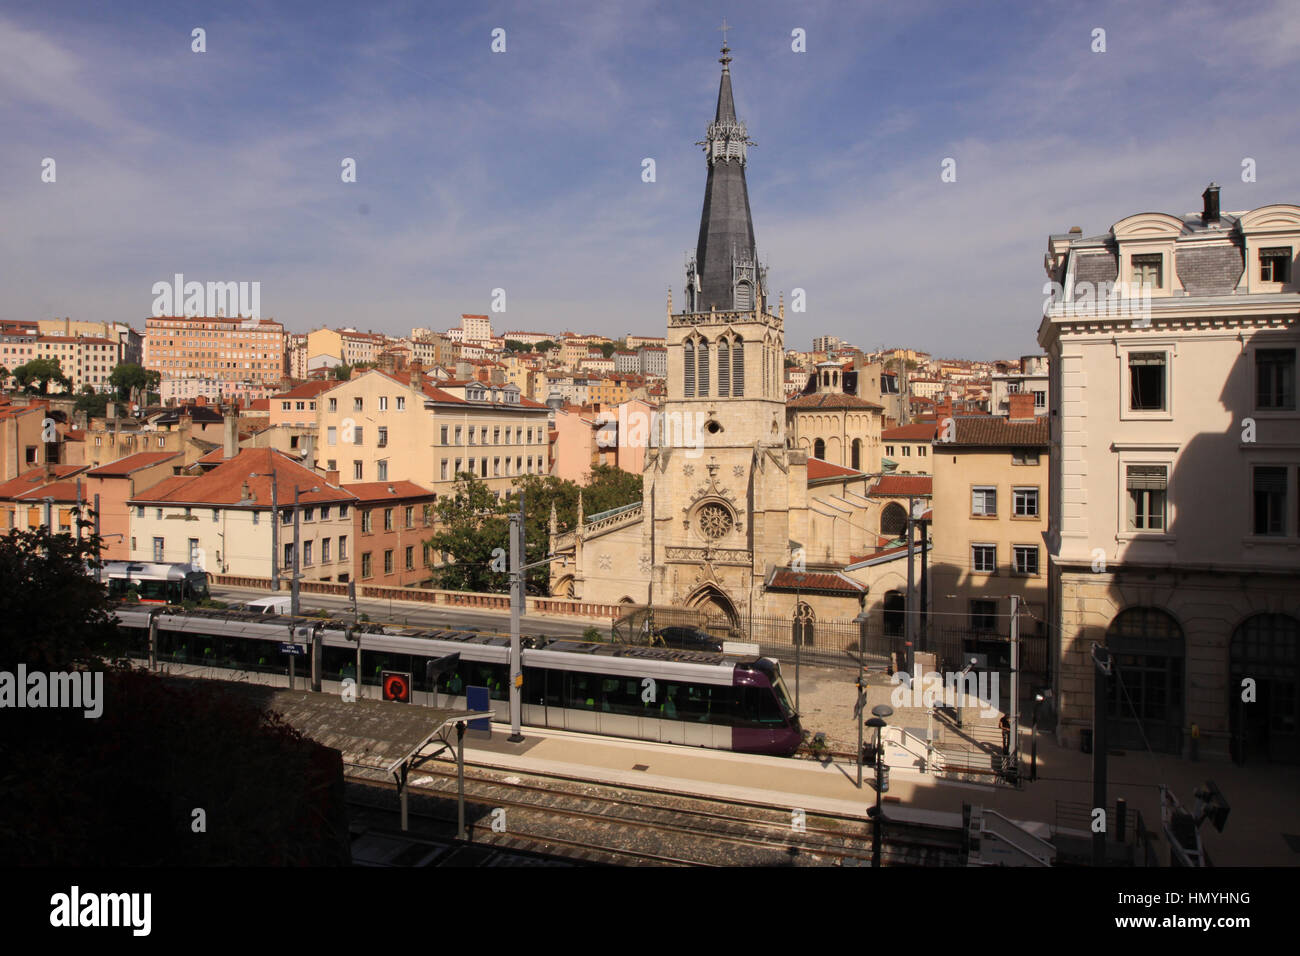 Gare Saint-Paul, train statioin in Lyon, France Stock Photo